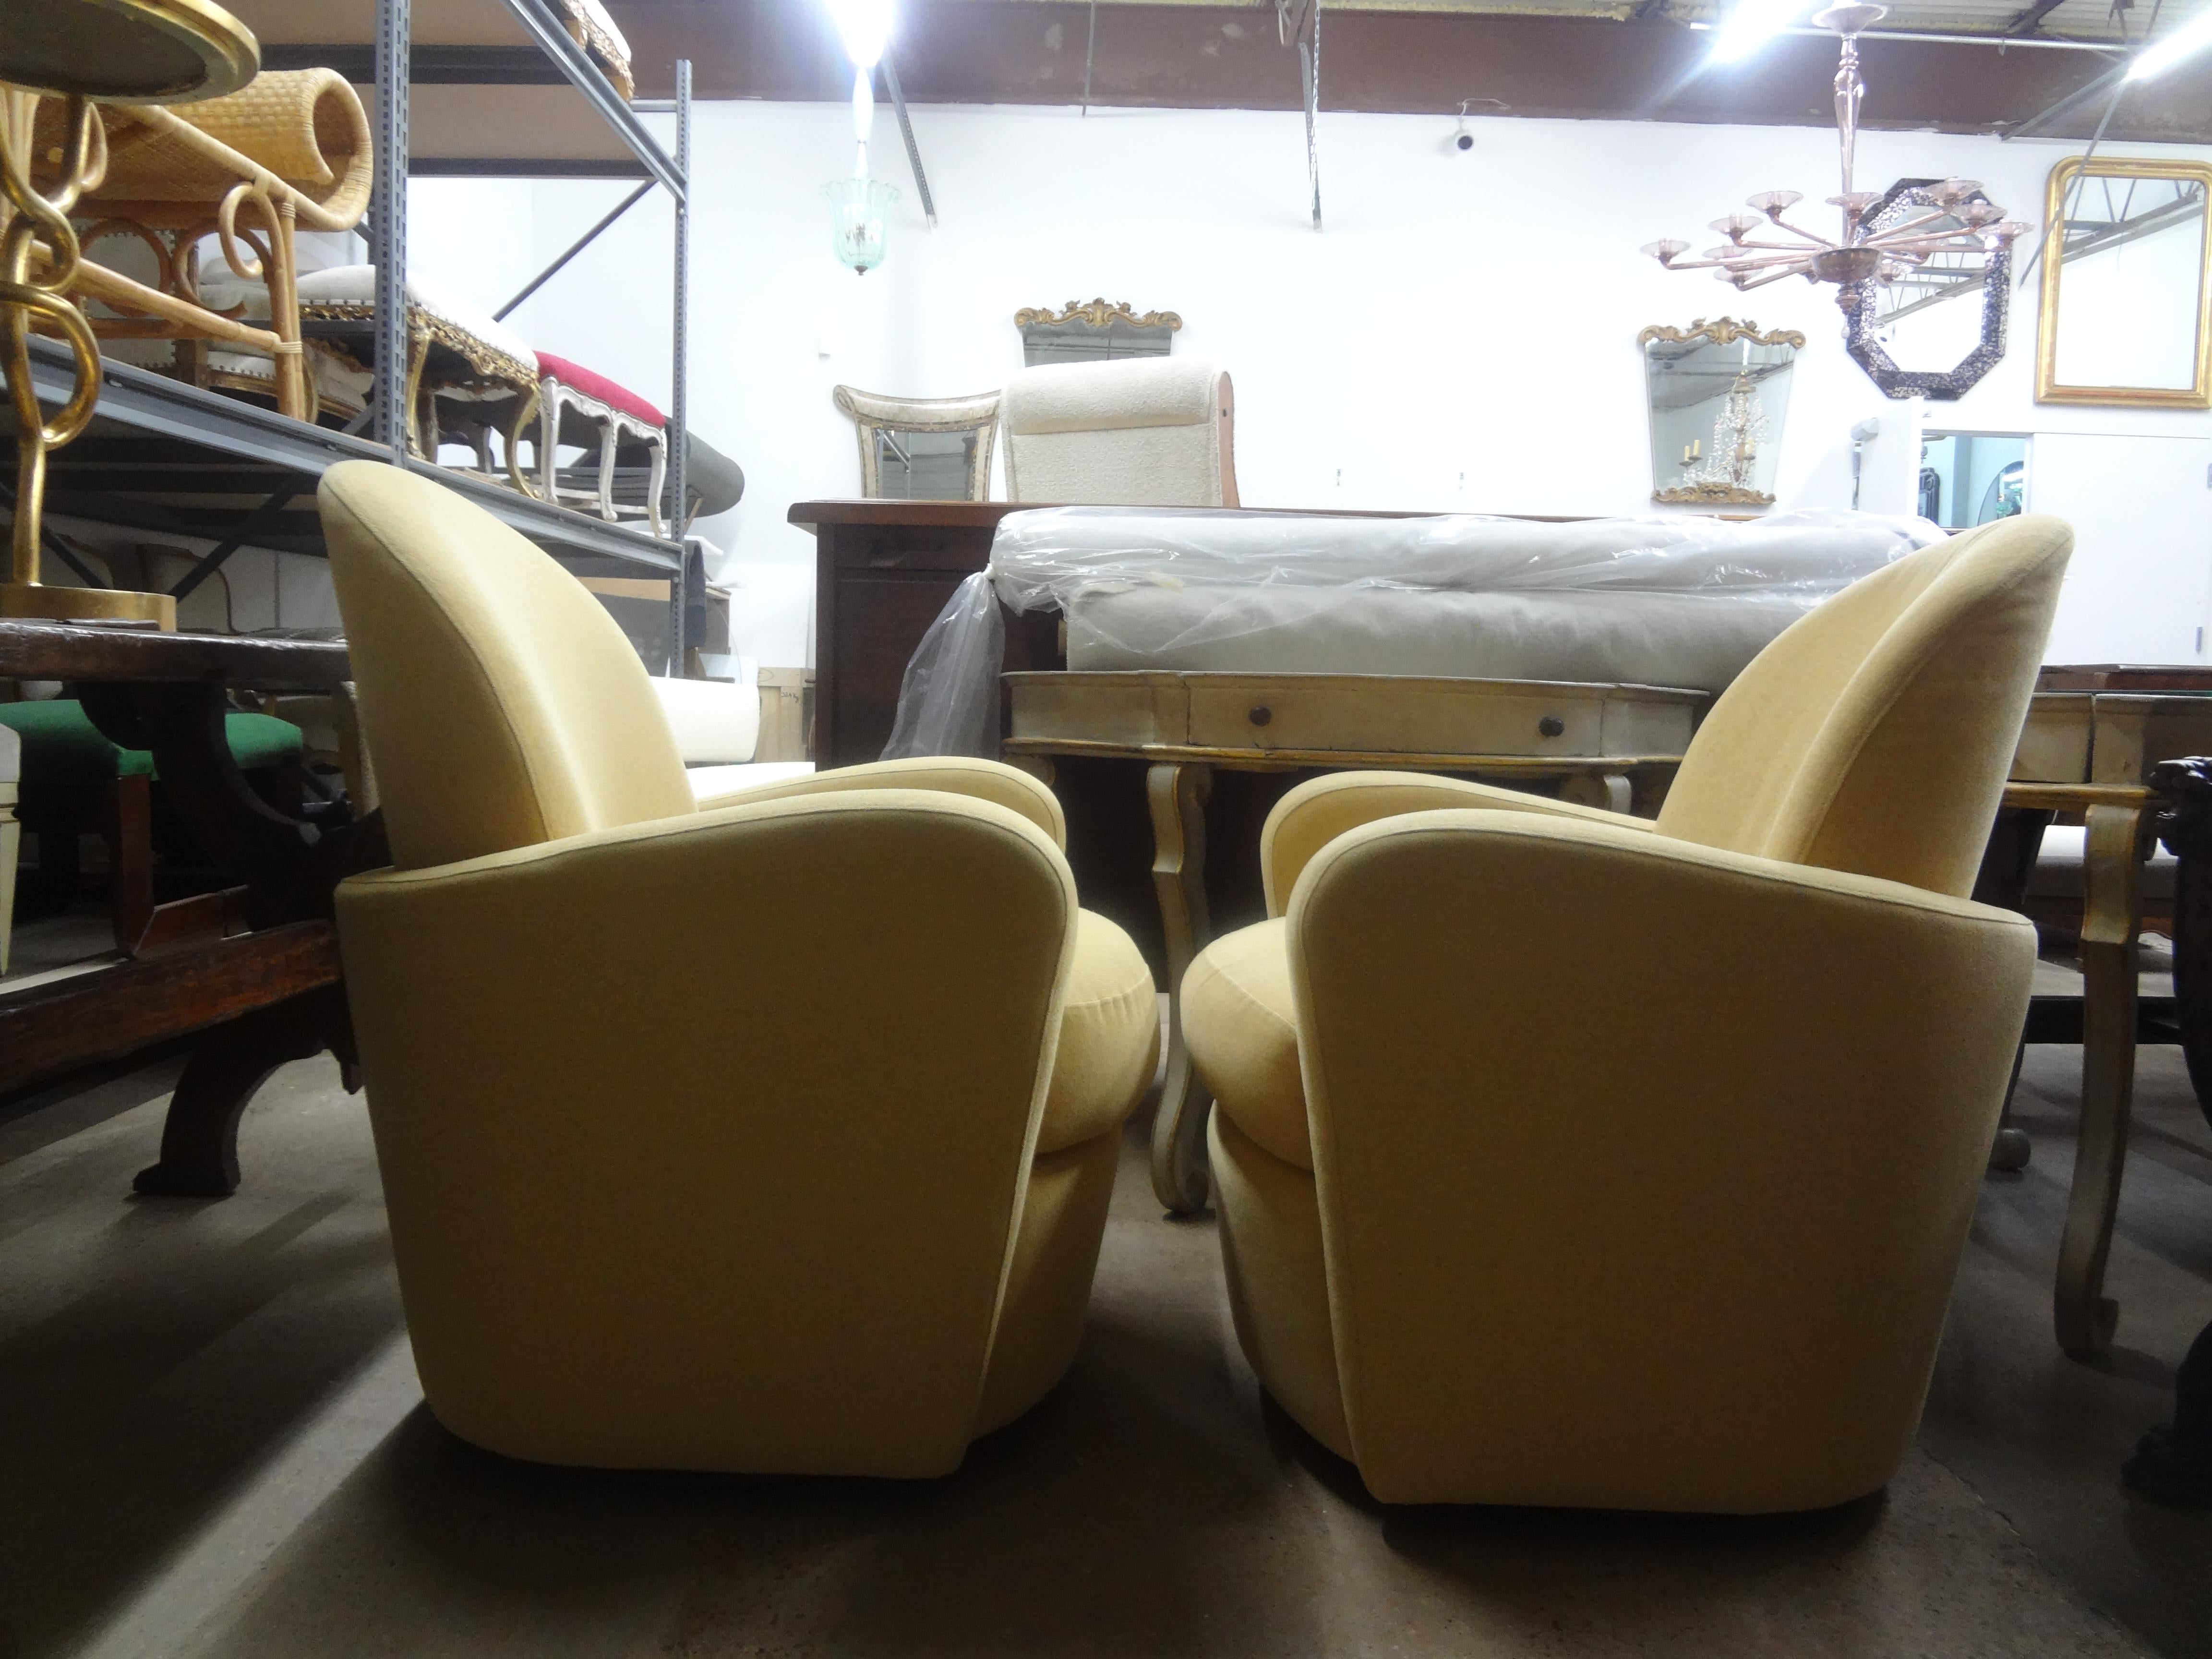 Paire de chaises pivotantes de style Michael Wolk. Cette superbe paire de chaises pivotantes, chaises de salon, chaises club ou chaises baignoires inspirées du design de Michael Wolk Miami sont très confortables et en très bon état vintage.
Cette